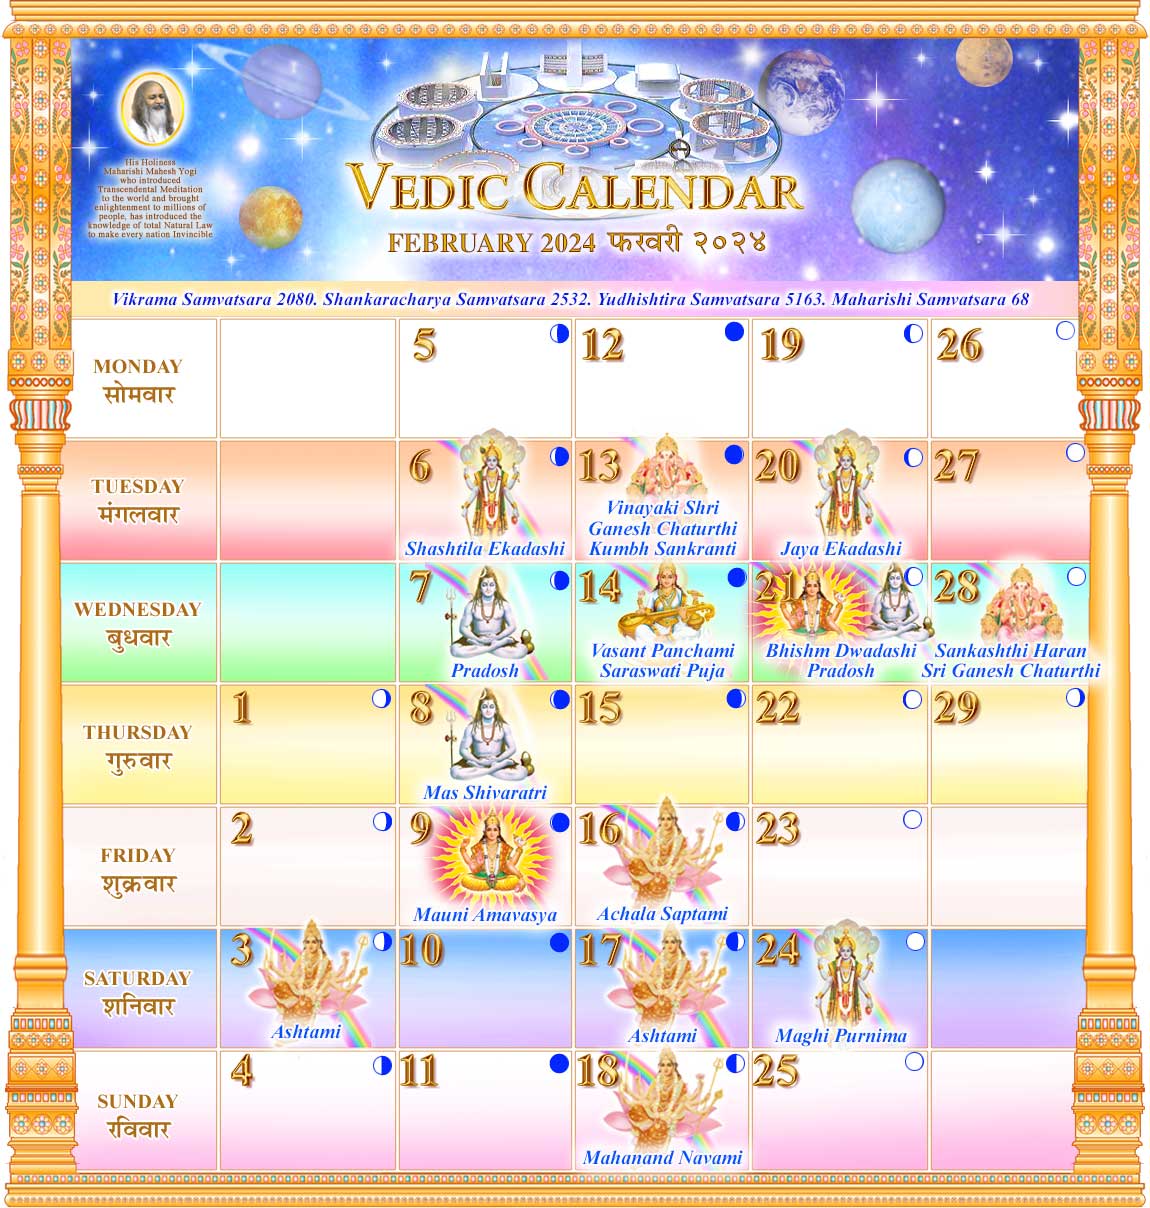 Vedic Calendar for February